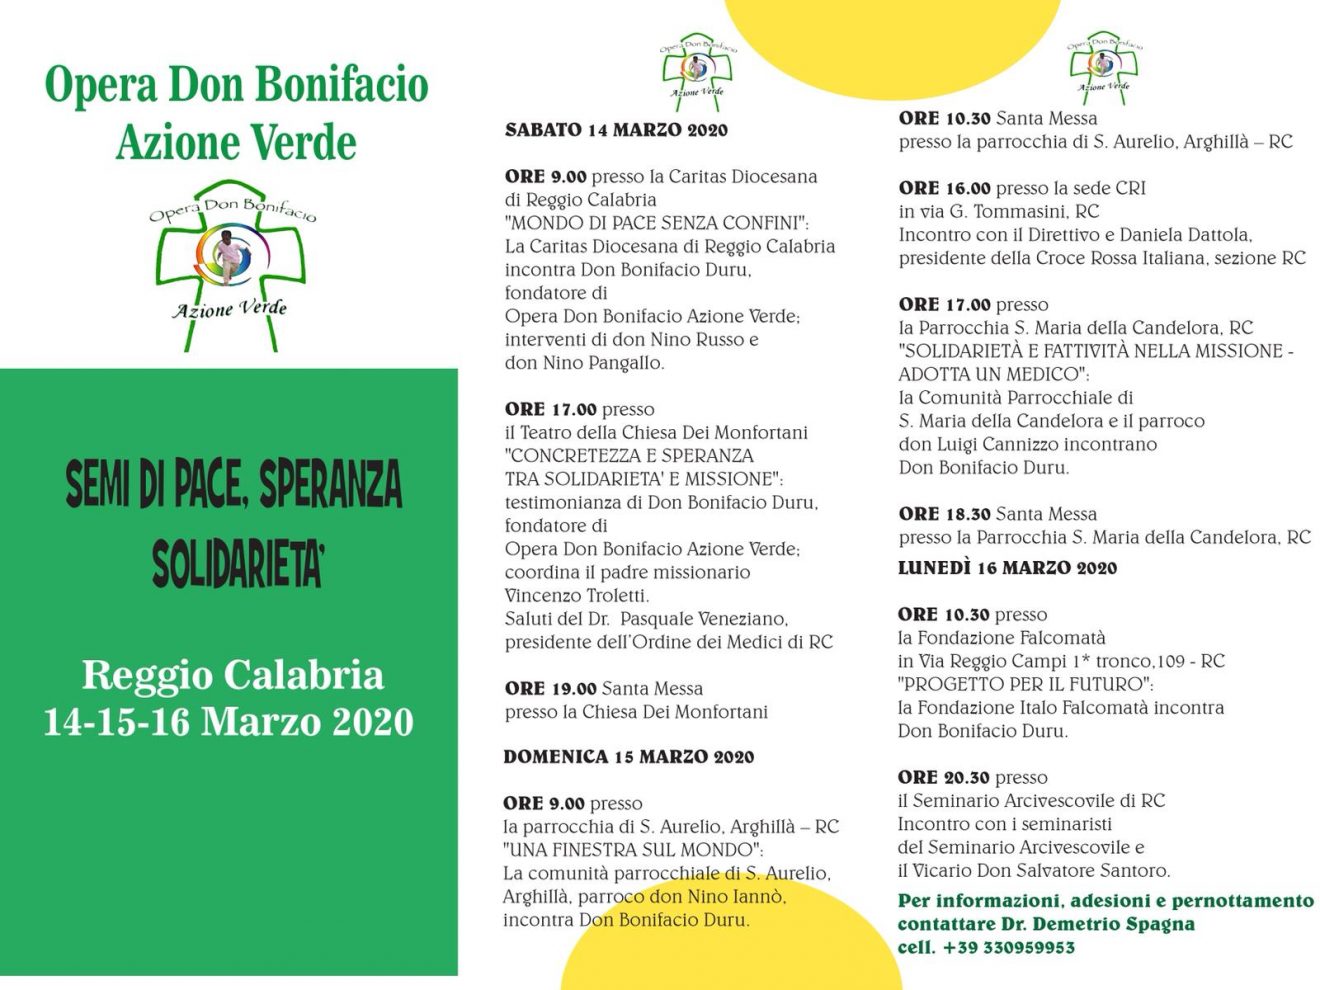 Semi di pace, speranza, solidarietà - L'Opera Don Bonifacio Azione Verde a Reggio Calabria